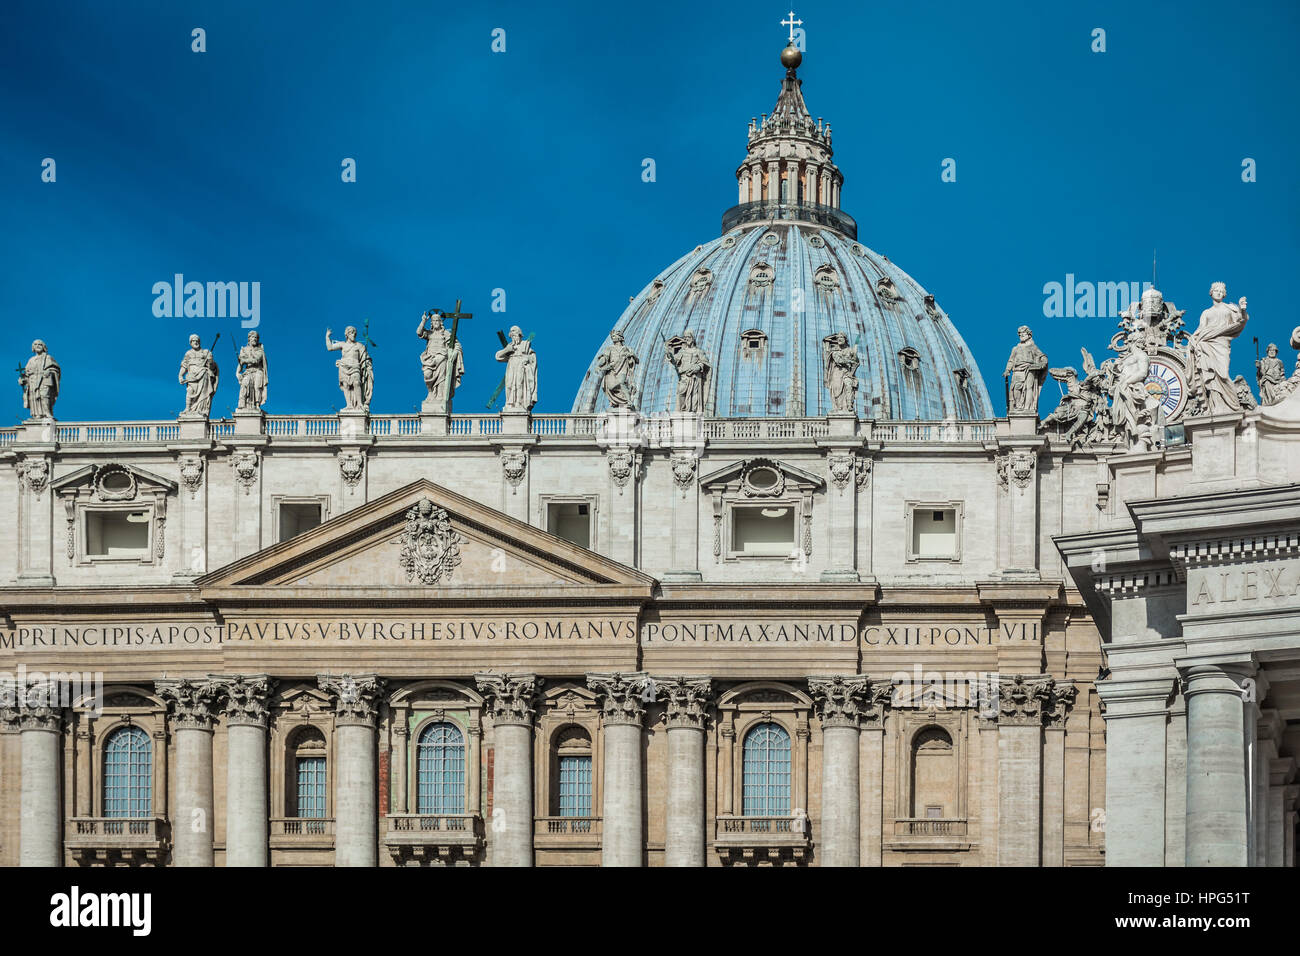 La Basilica di San Pietro in Roma città, famoso punto di riferimento turistico in Europa. Foto Stock